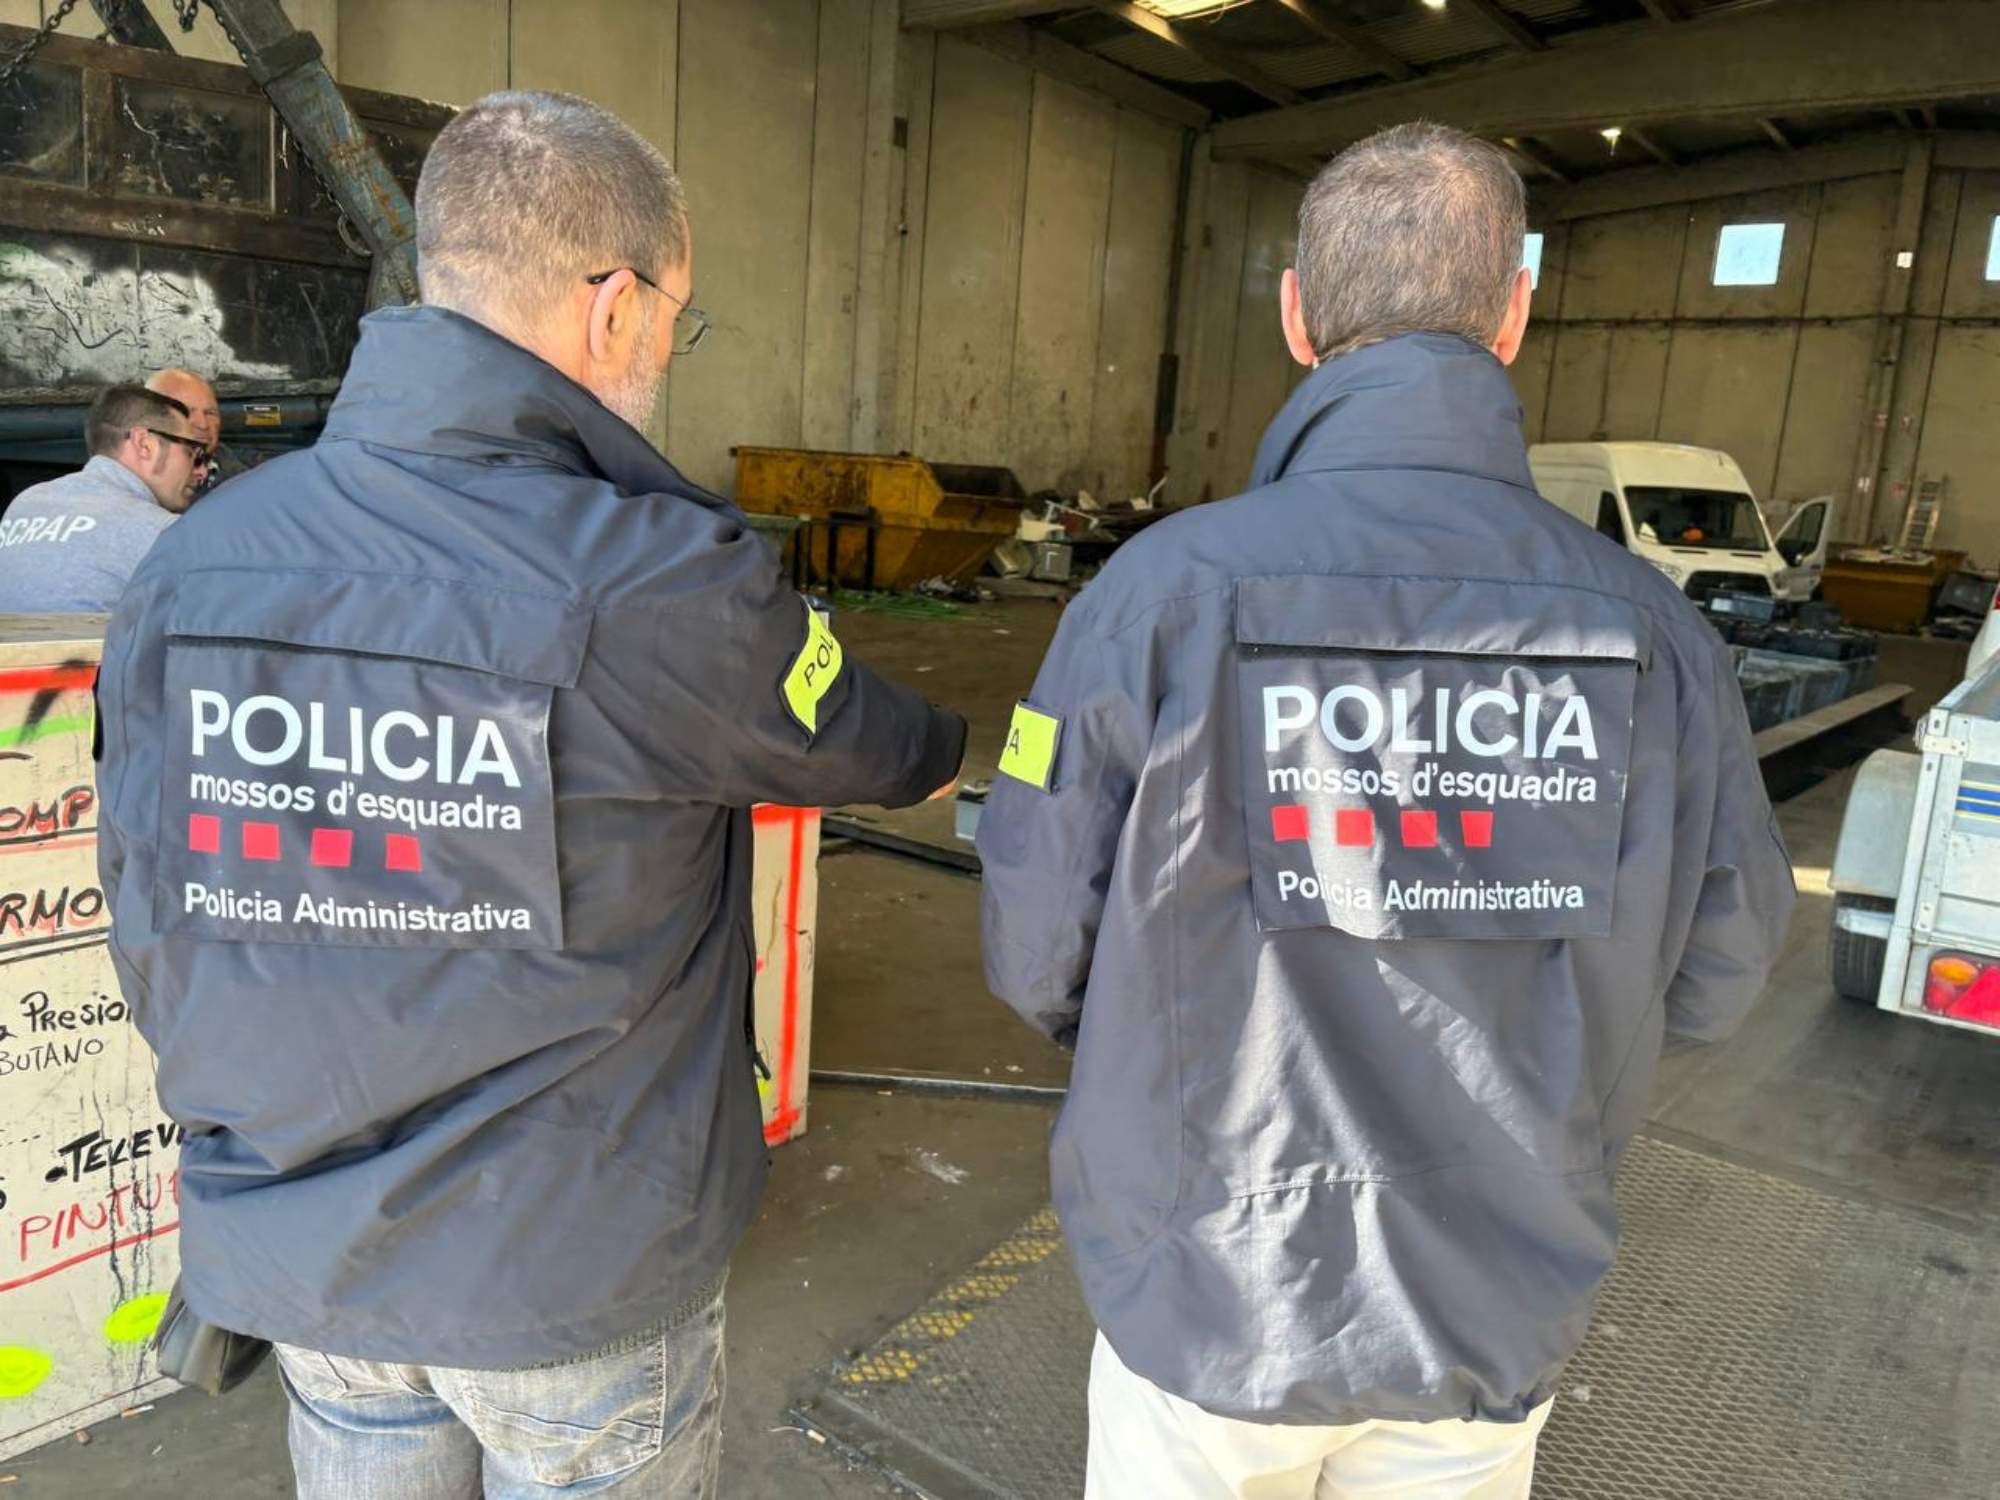 La radiografia dels robatoris de coure a Catalunya: qui el sostreu i on acaba?